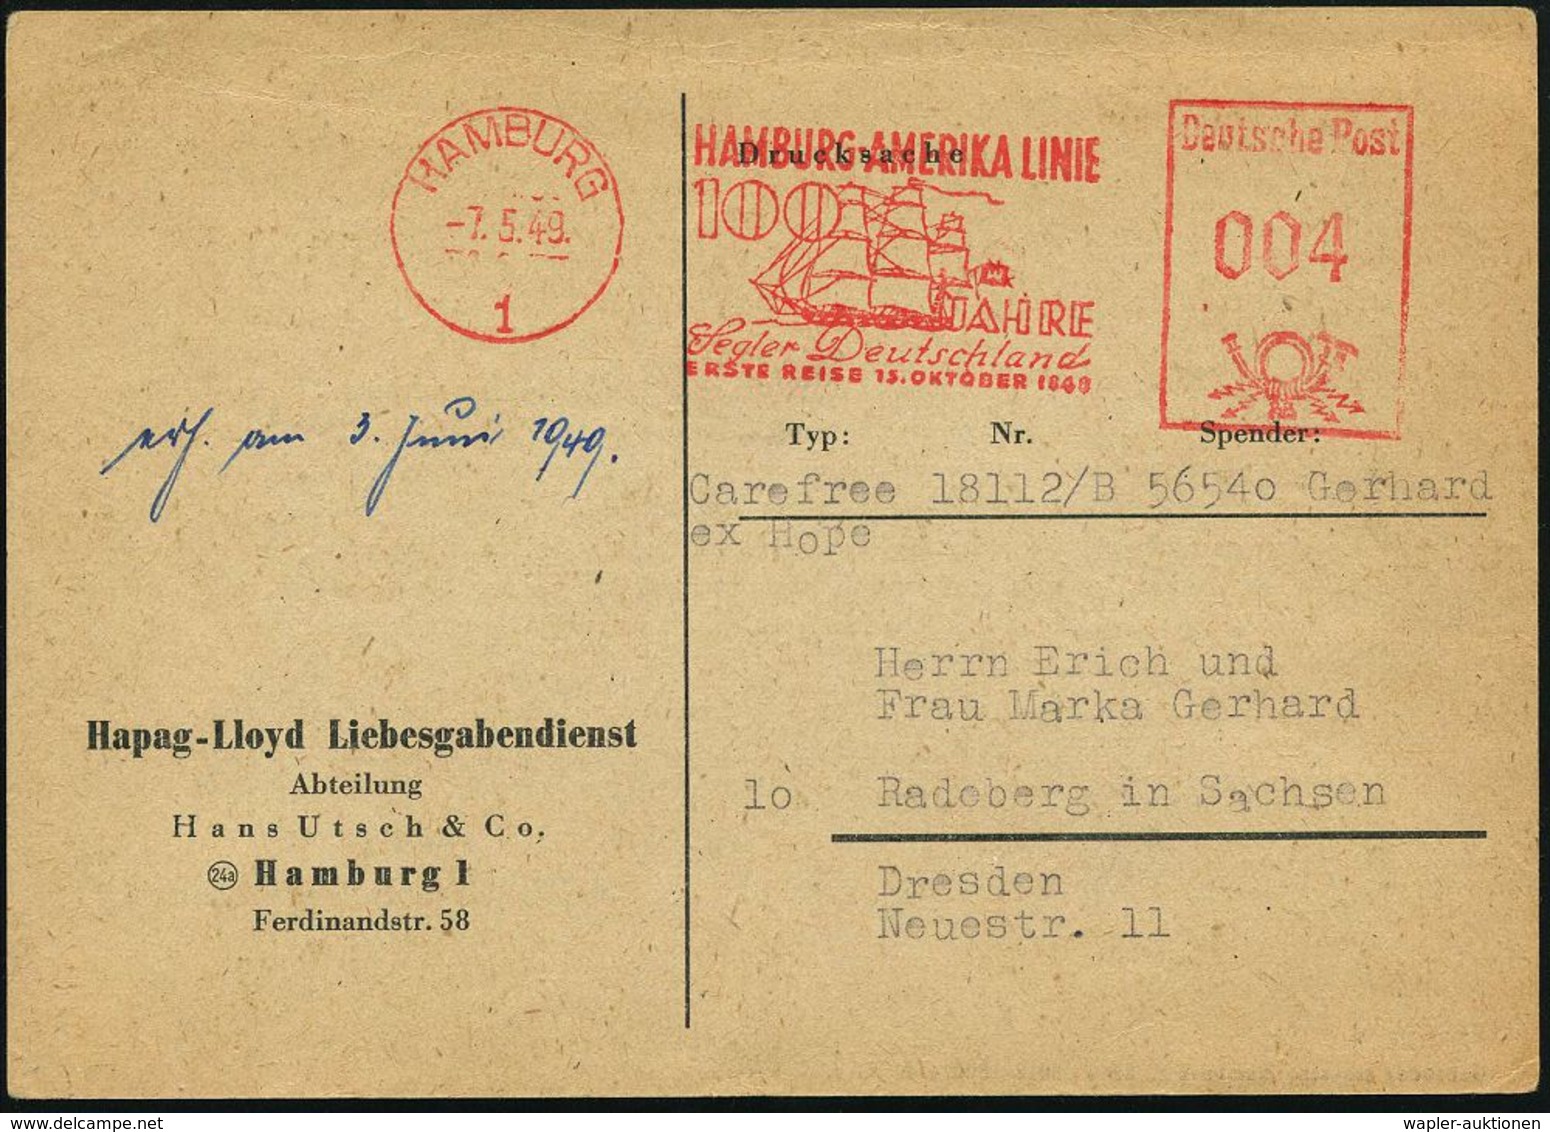 HAMBURG/ 1/ HAMBURG-AMERIKA LINIE/ 100 JAHRE/ Segler Deutschland/ ERSTE REISE 15.OKT.1848 1949 (7.5.) Sehr Seltener AFS  - Marítimo